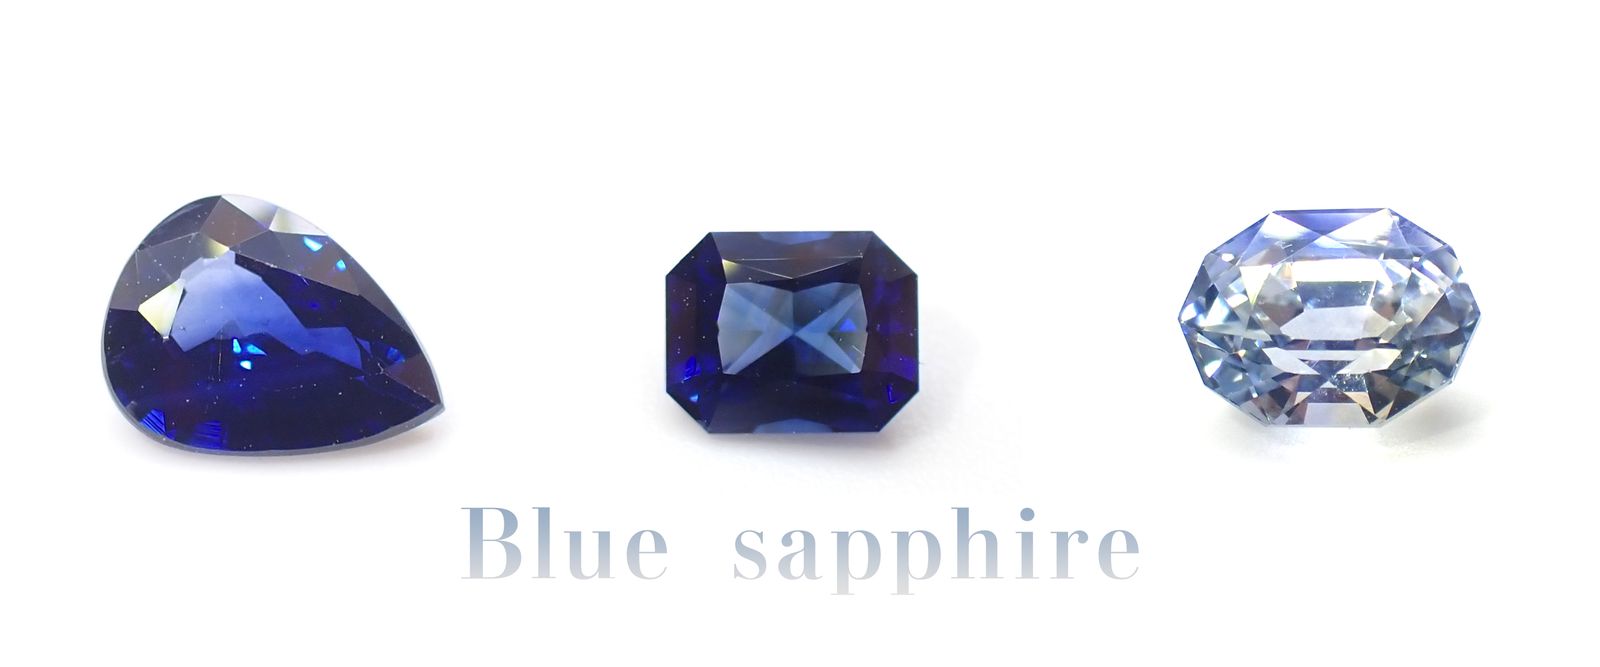 神秘的な青い宝石サファイアの魅力とは？特徴から歴史まで徹底解説 | TOP STONE(トップストーン)